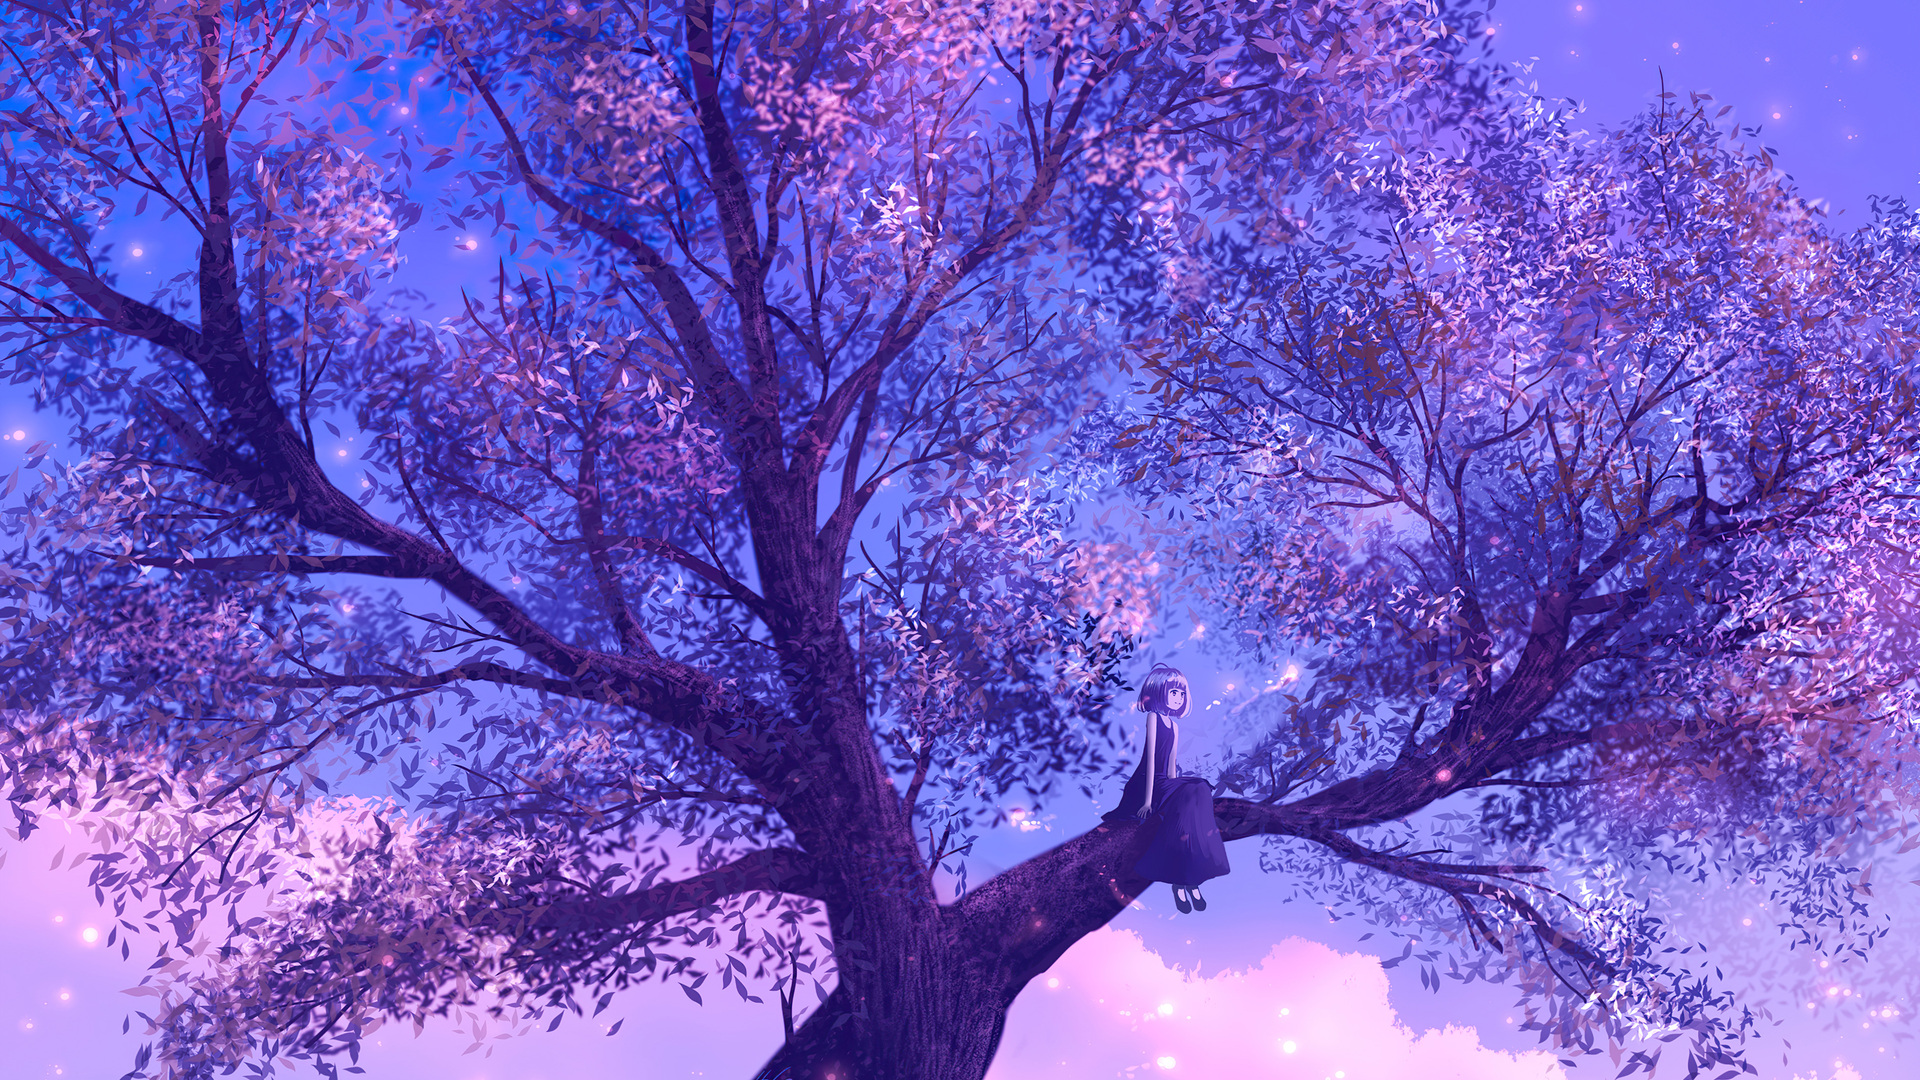 Anime Girl Sitting On Purple Big Tree: Một phong cảnh độc đáo và lãng mạn, với Thiên Nga dễ thương ngồi trên chiếc cây màu tím. Hãy để lời kể chuyện phụ thuộc vào trí tưởng tượng của bạn, để cảm nhận trọn vẹn nét đẹp hoàn toàn khác biệt của hình ảnh này.